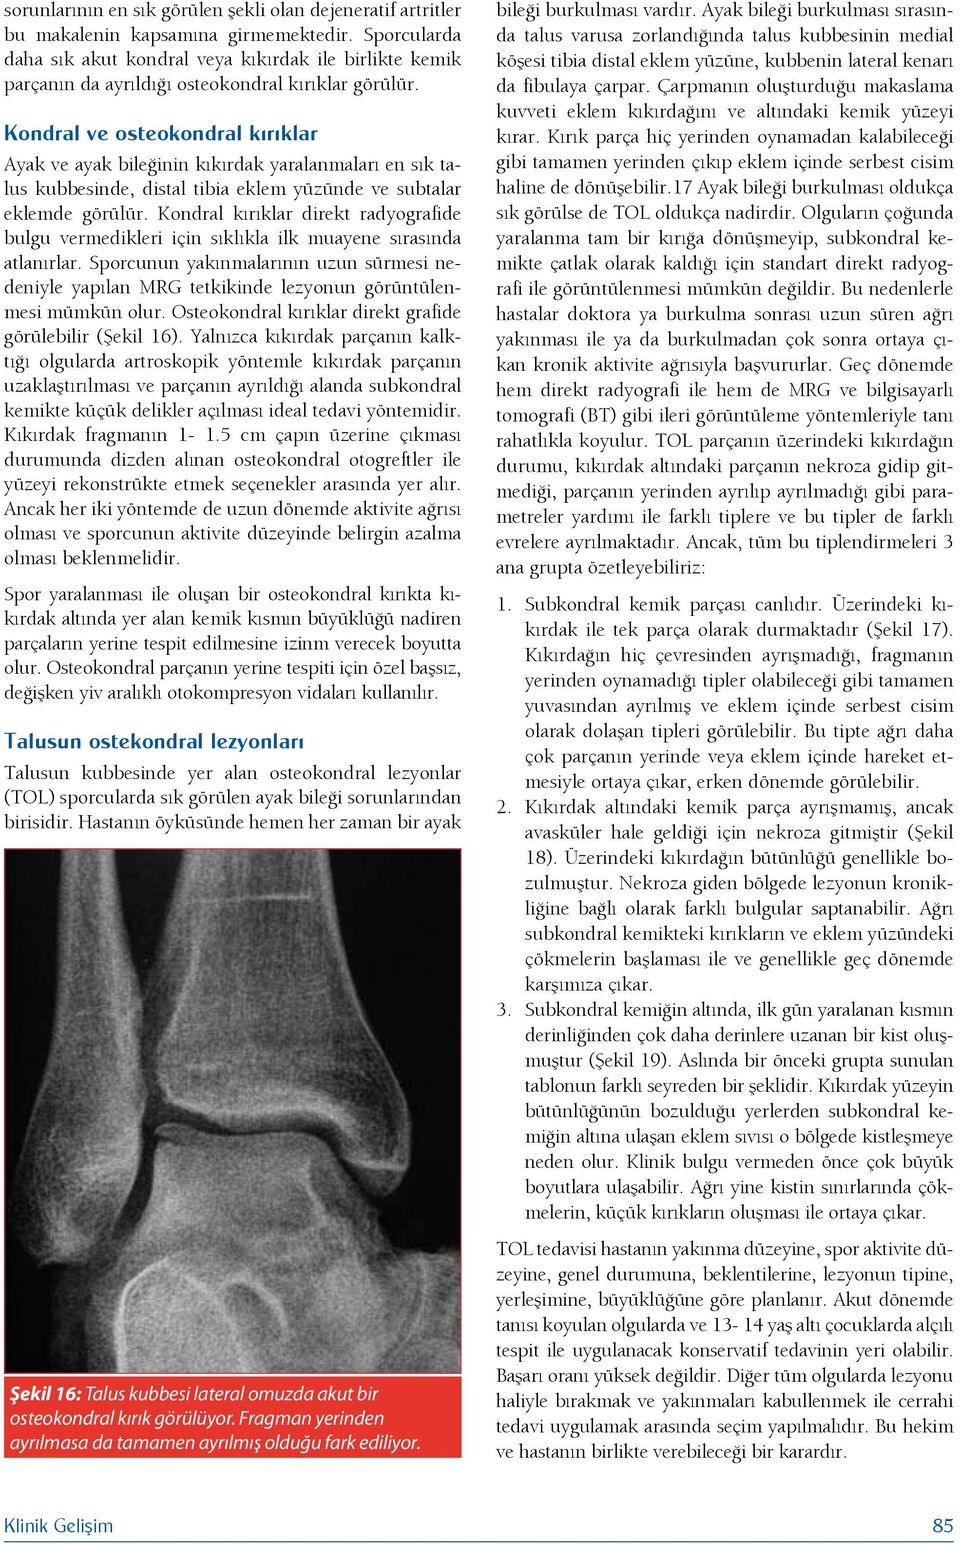 Kondral ve osteokondral kırıklar Ayak ve ayak bileğinin kıkırdak yaralanmaları en sık talus kubbesinde, distal tibia eklem yüzünde ve subtalar eklemde görülür.